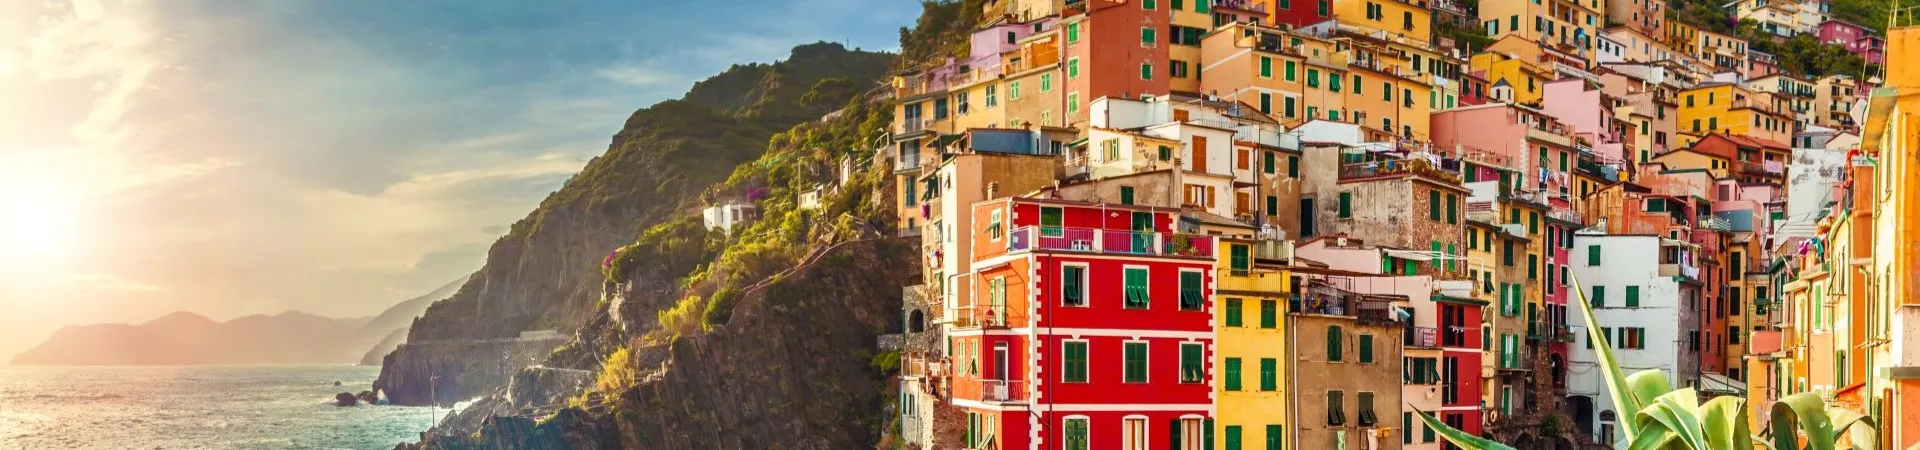 Riomaggiore, Cinque Terre, Italy 489139422 Resize2